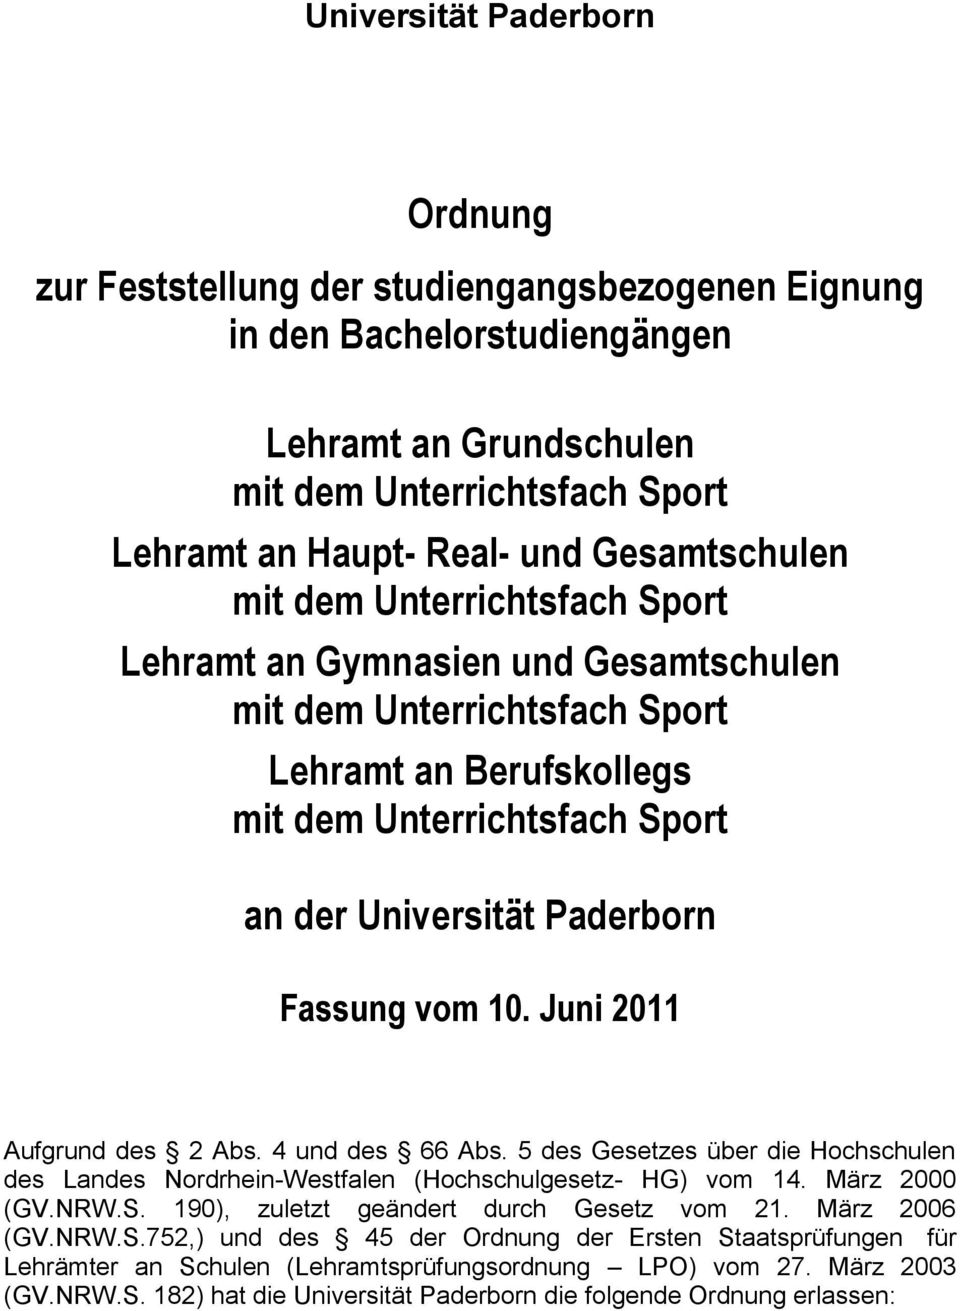 Fassung vom 10. Juni 2011 Aufgrund des 2 Abs. 4 und des 66 Abs. 5 des Gesetzes über die Hochschulen des Landes Nordrhein-Westfalen (Hochschulgesetz- HG) vom 14. März 2000 (GV.NRW.S.